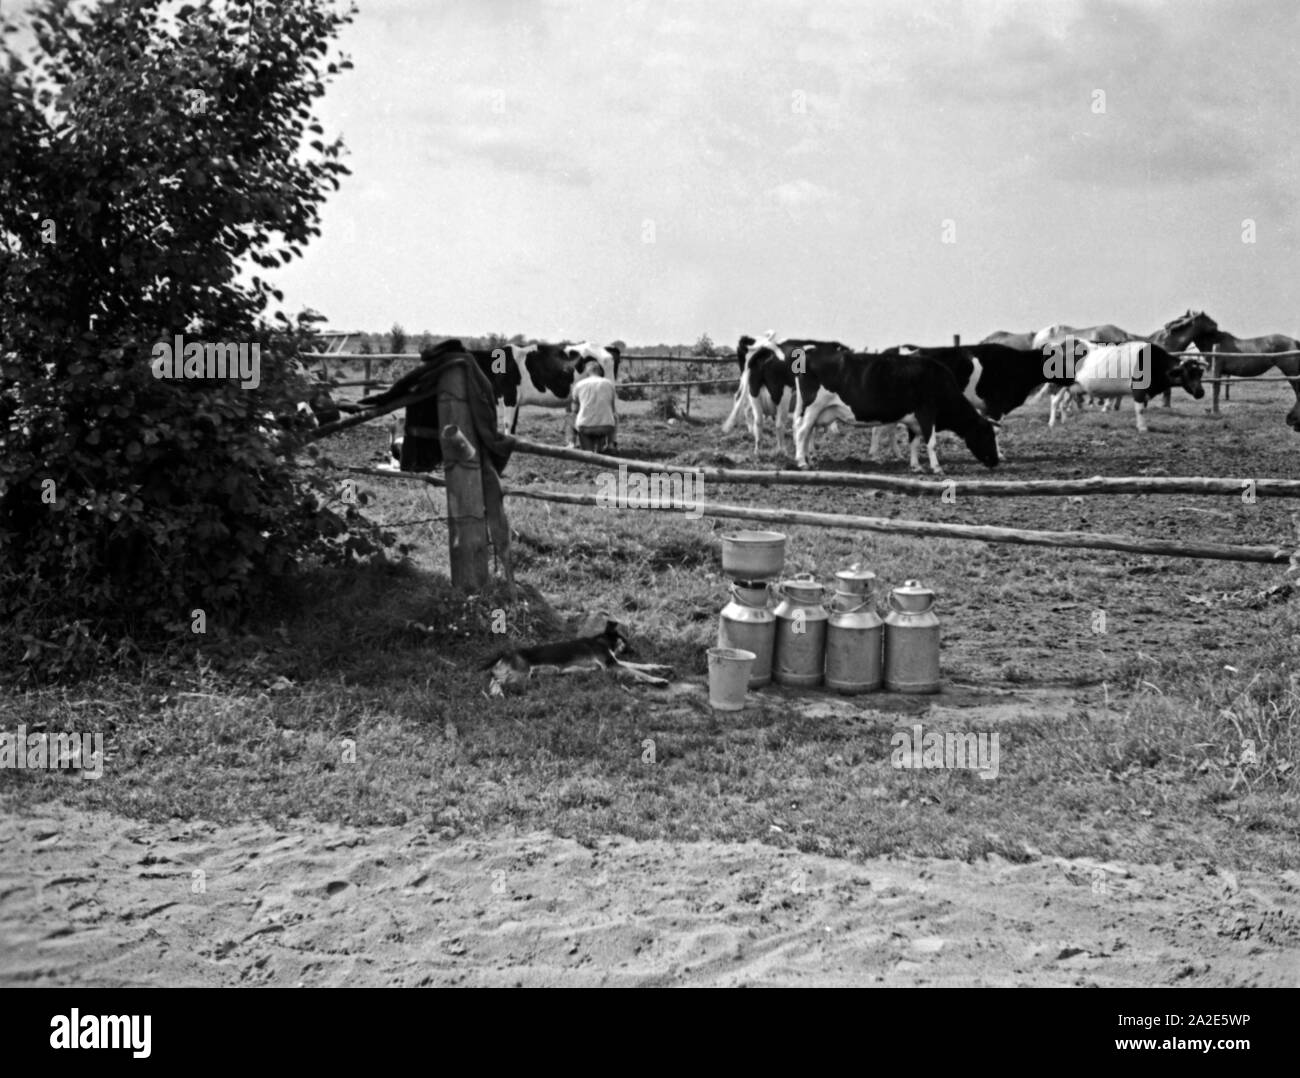 Viehkoppel mit Milchkühen im Samland, Ostpreußen, 1930er Jahre. Paddock con allevamento di bestiame da latte in Zambia, Prussia orientale, 1930s. Foto Stock